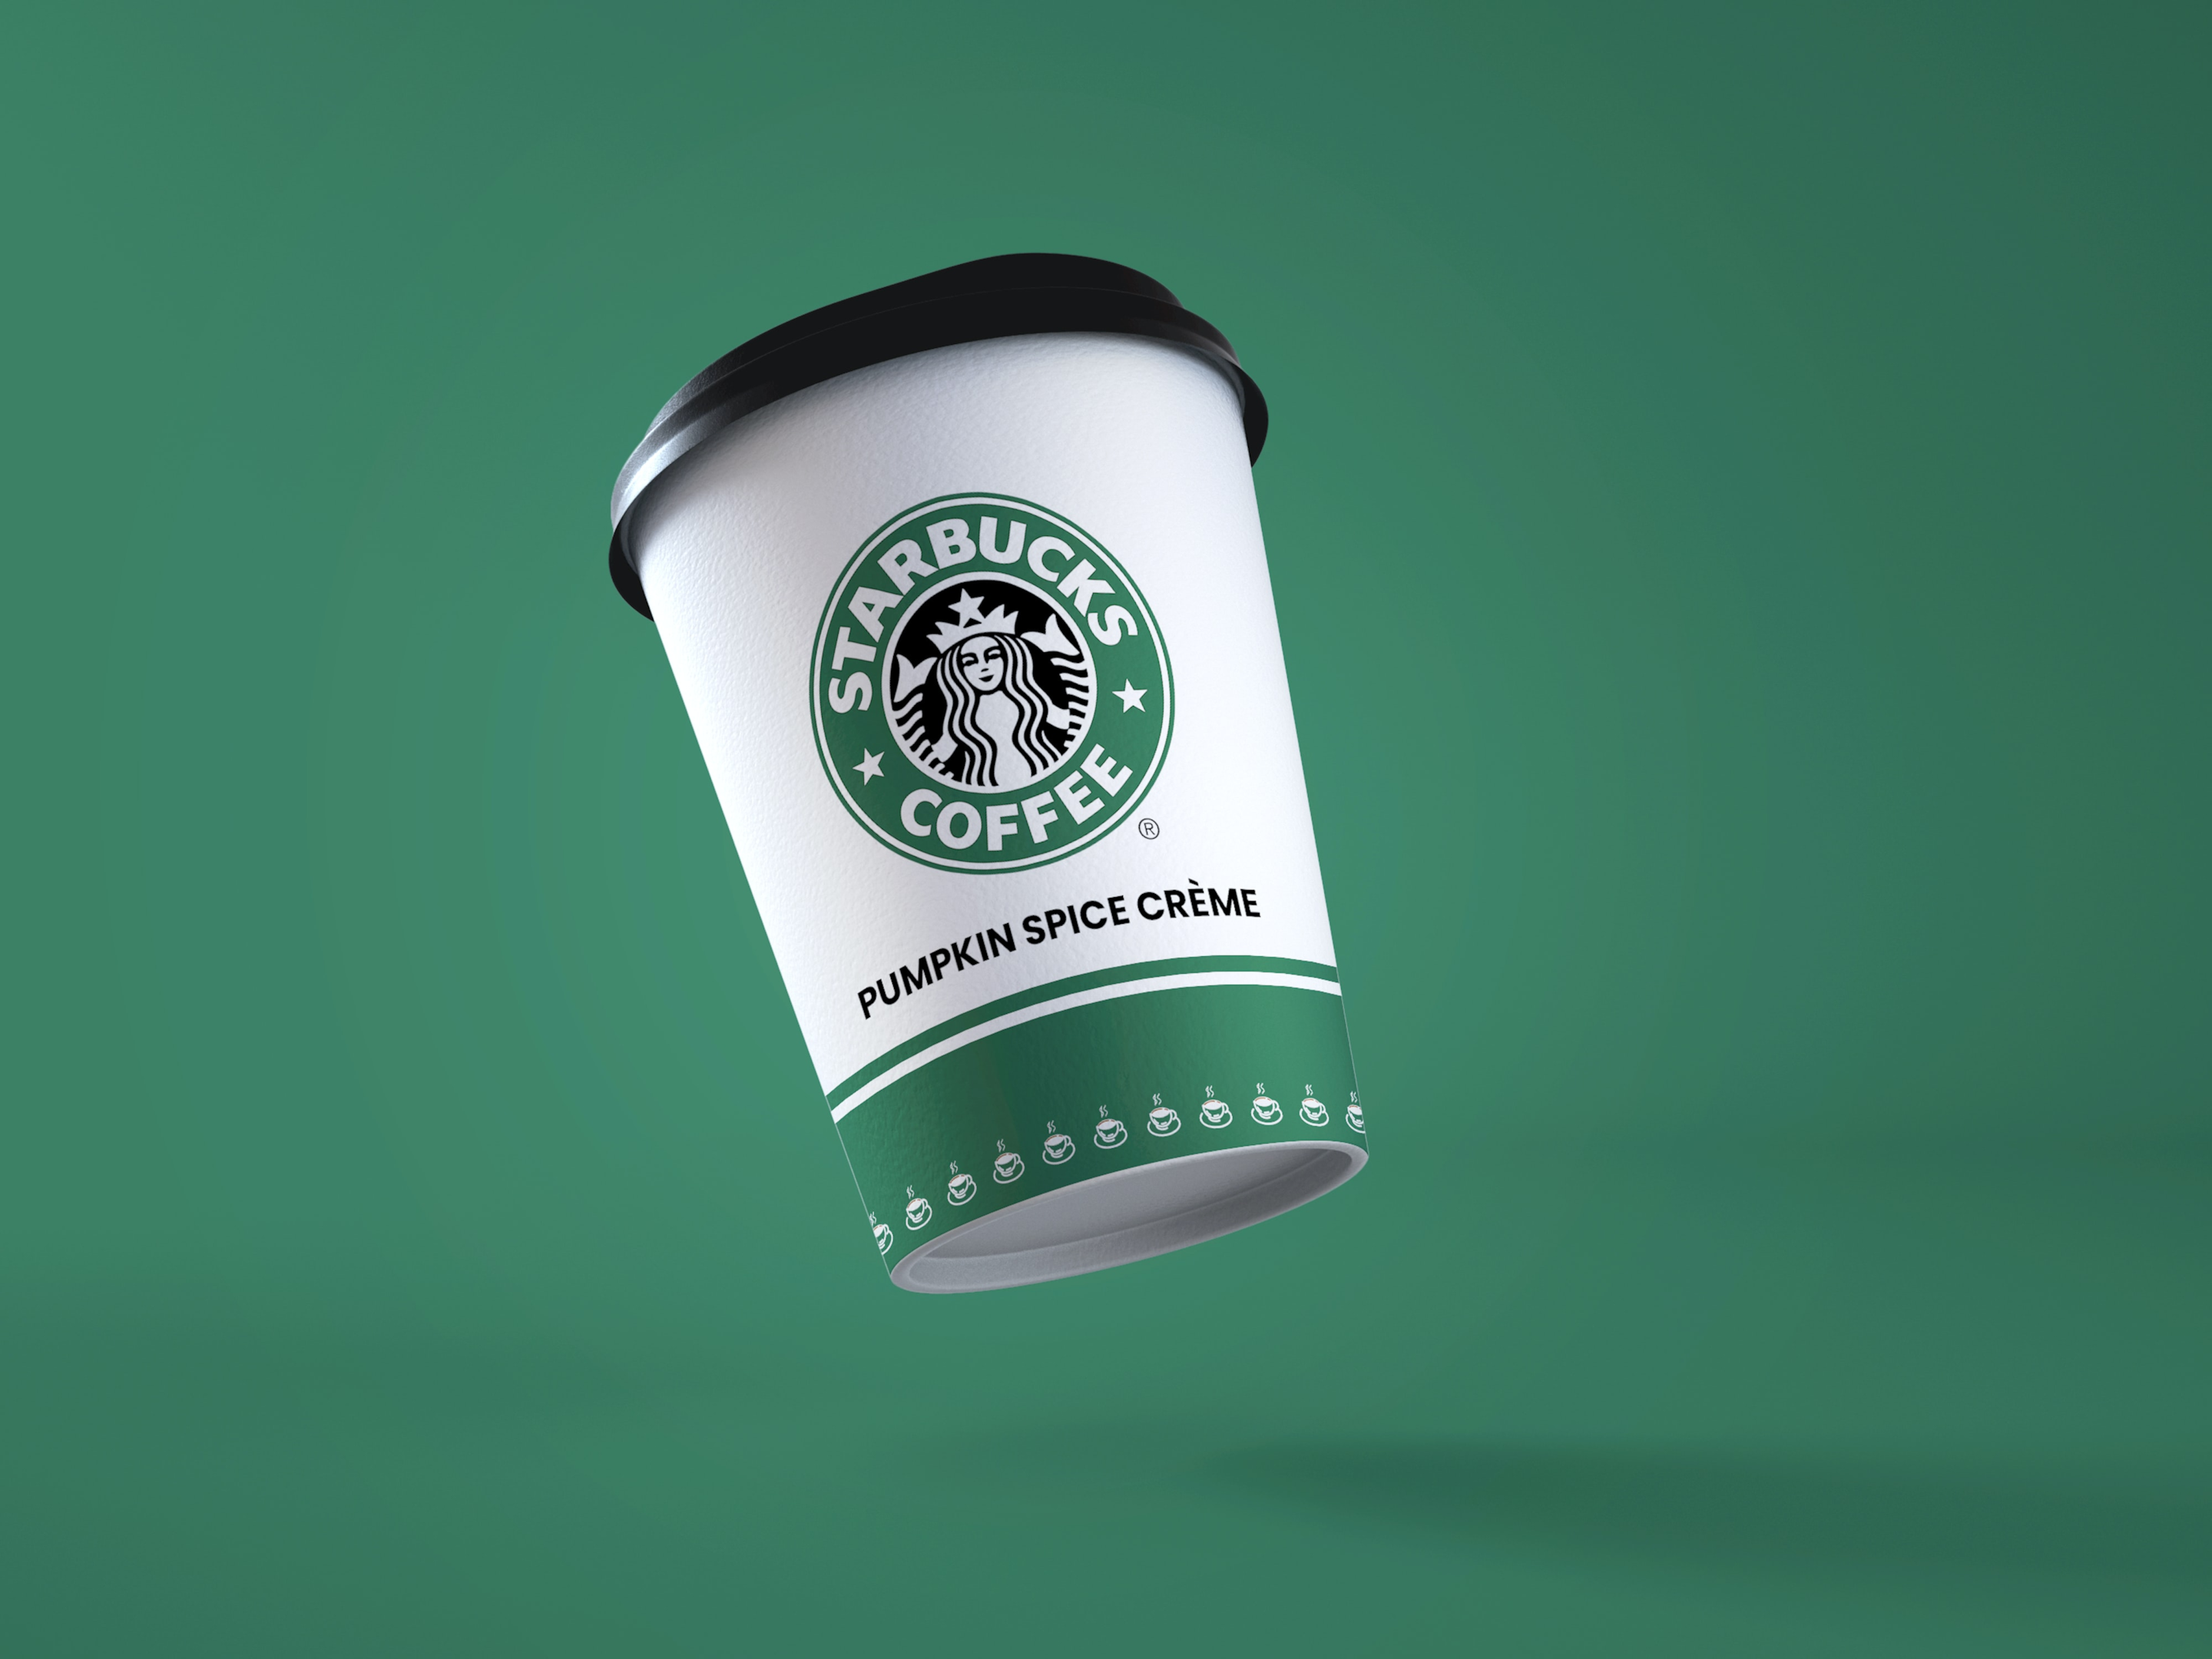 Identité visuelle Starbucks | Sortlist Blog